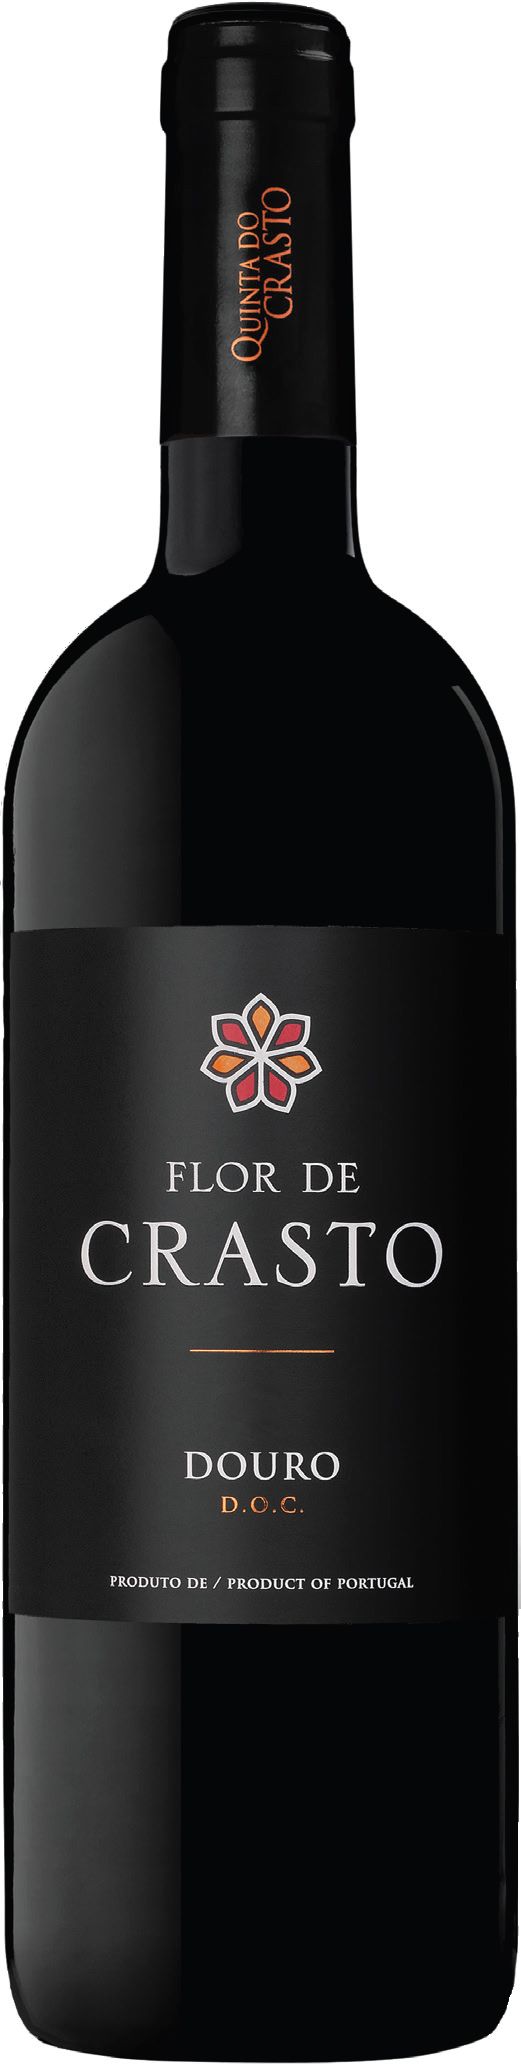 Quinta Do Crasto, Flor De Crasto Tinto, 2018